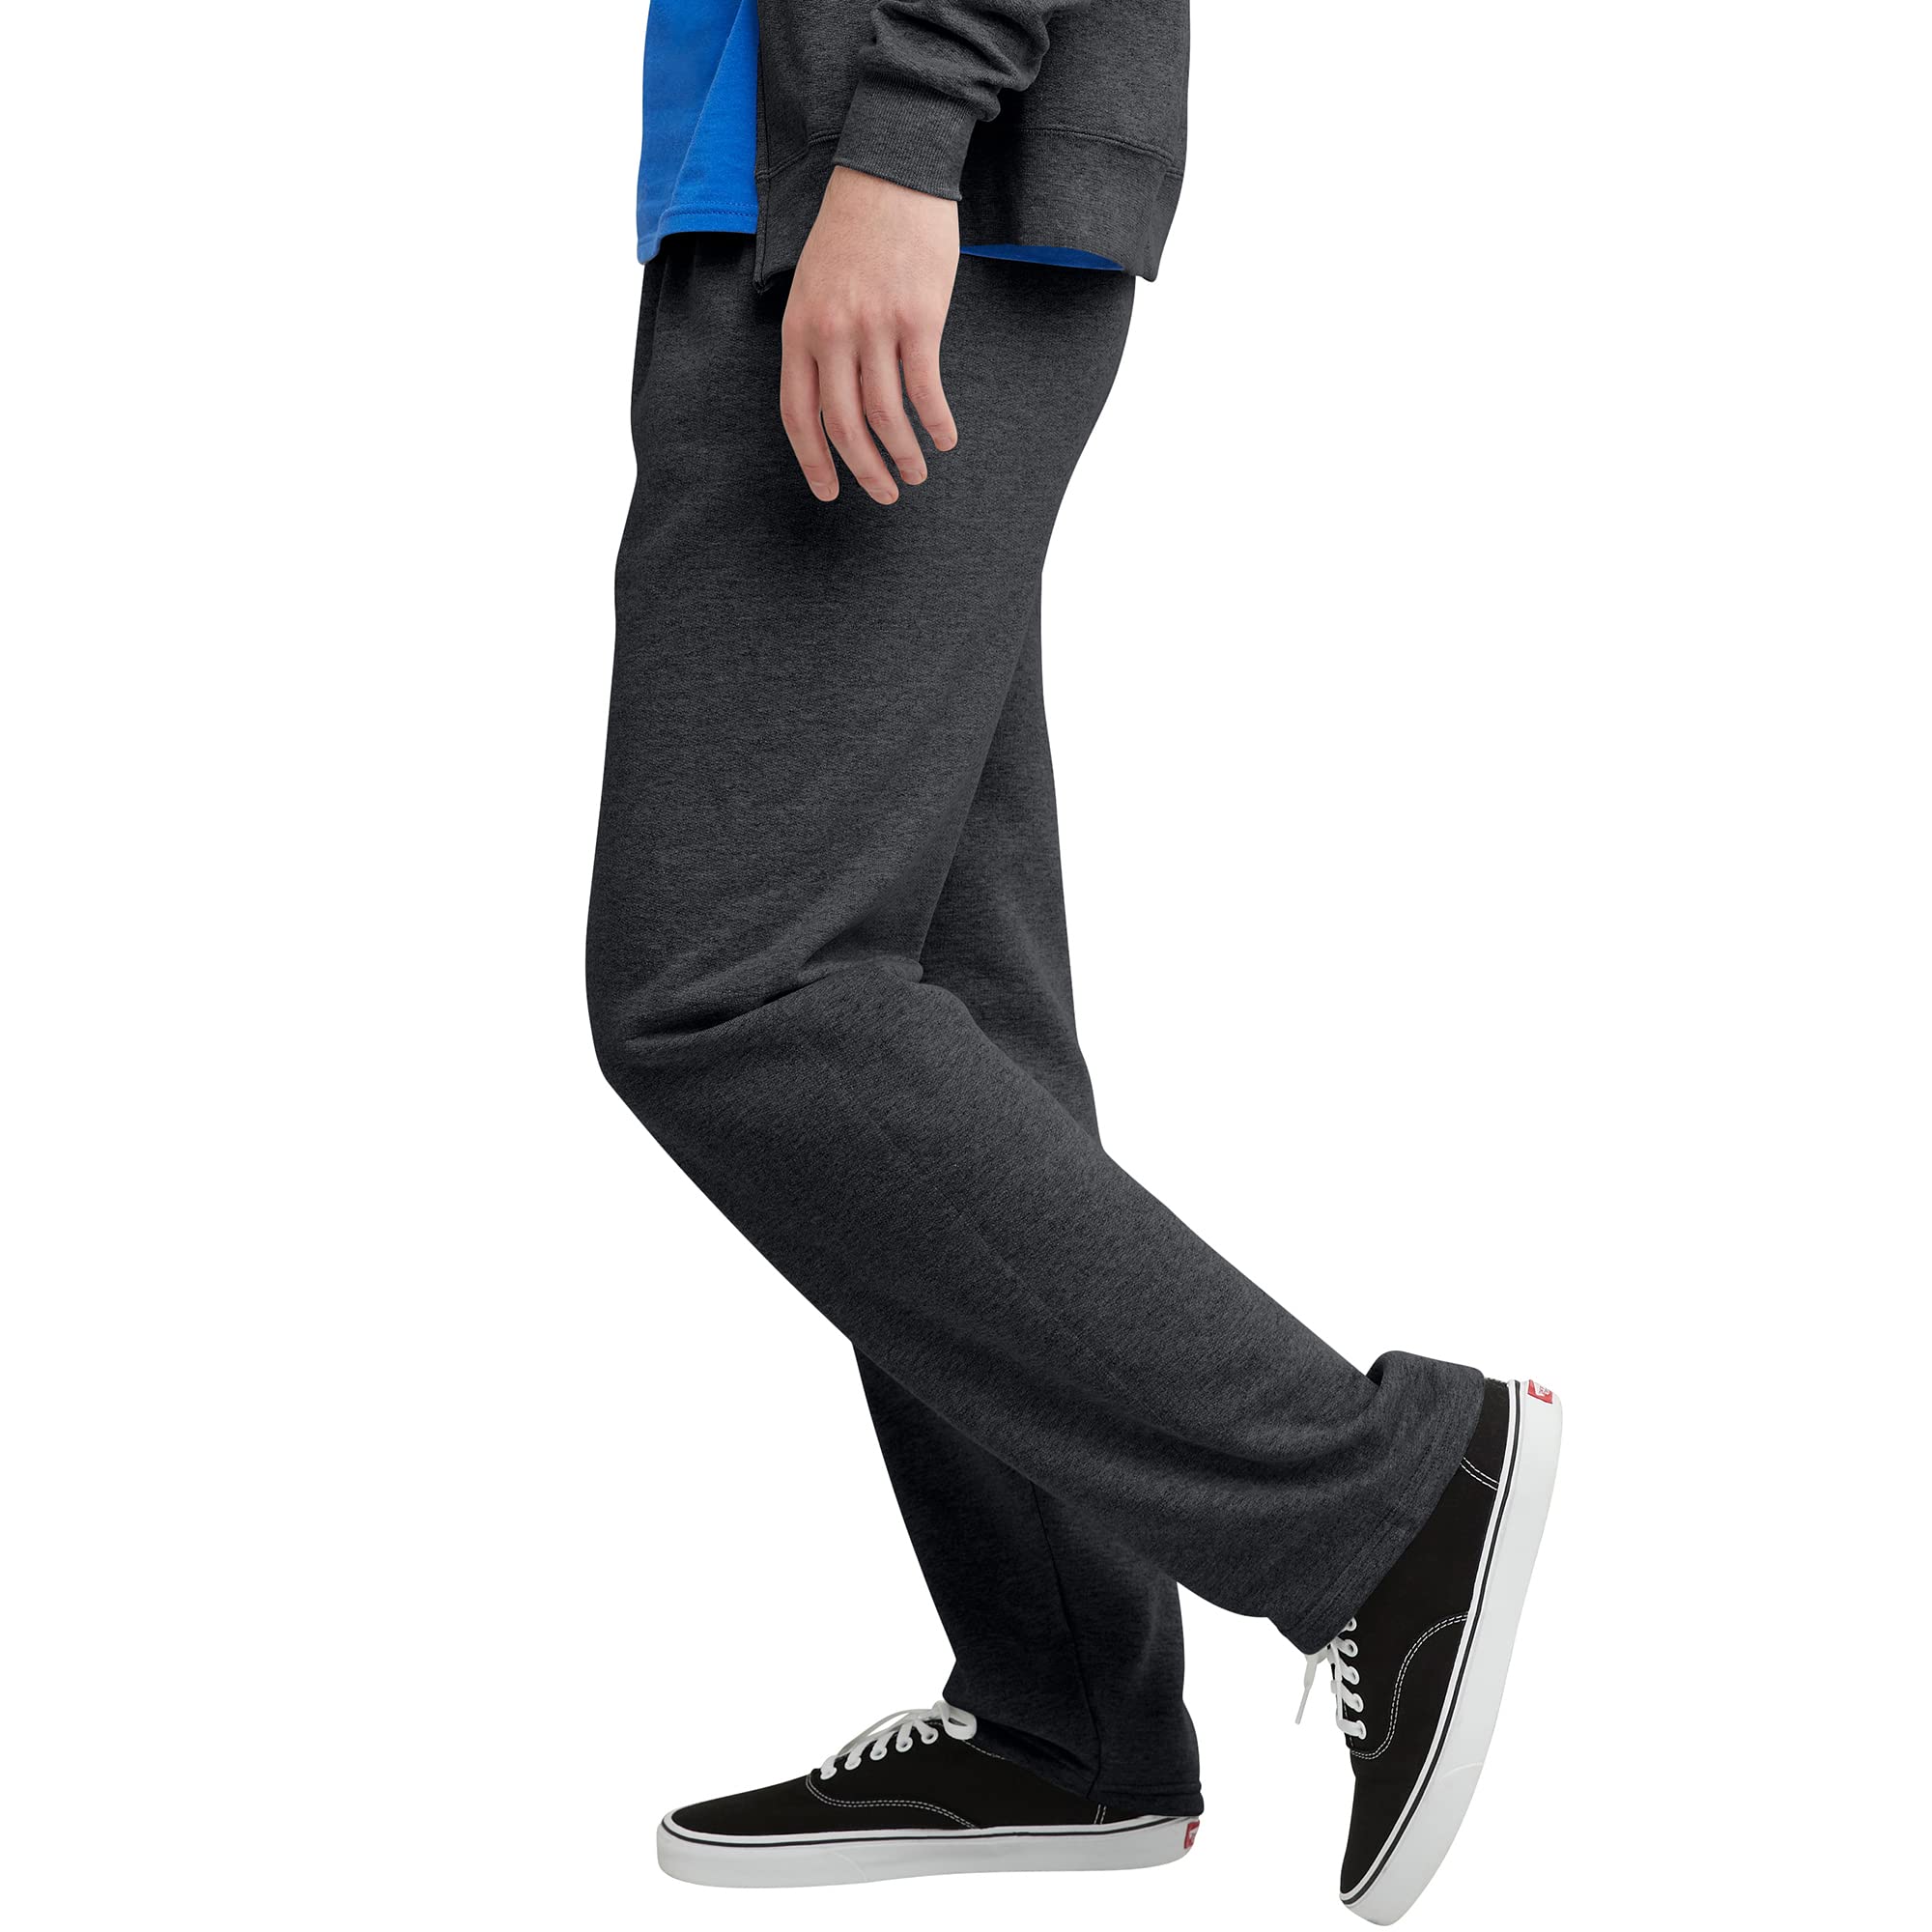 Hanes ComfortSoft EcoSmart Men's Fleece Sweatpants